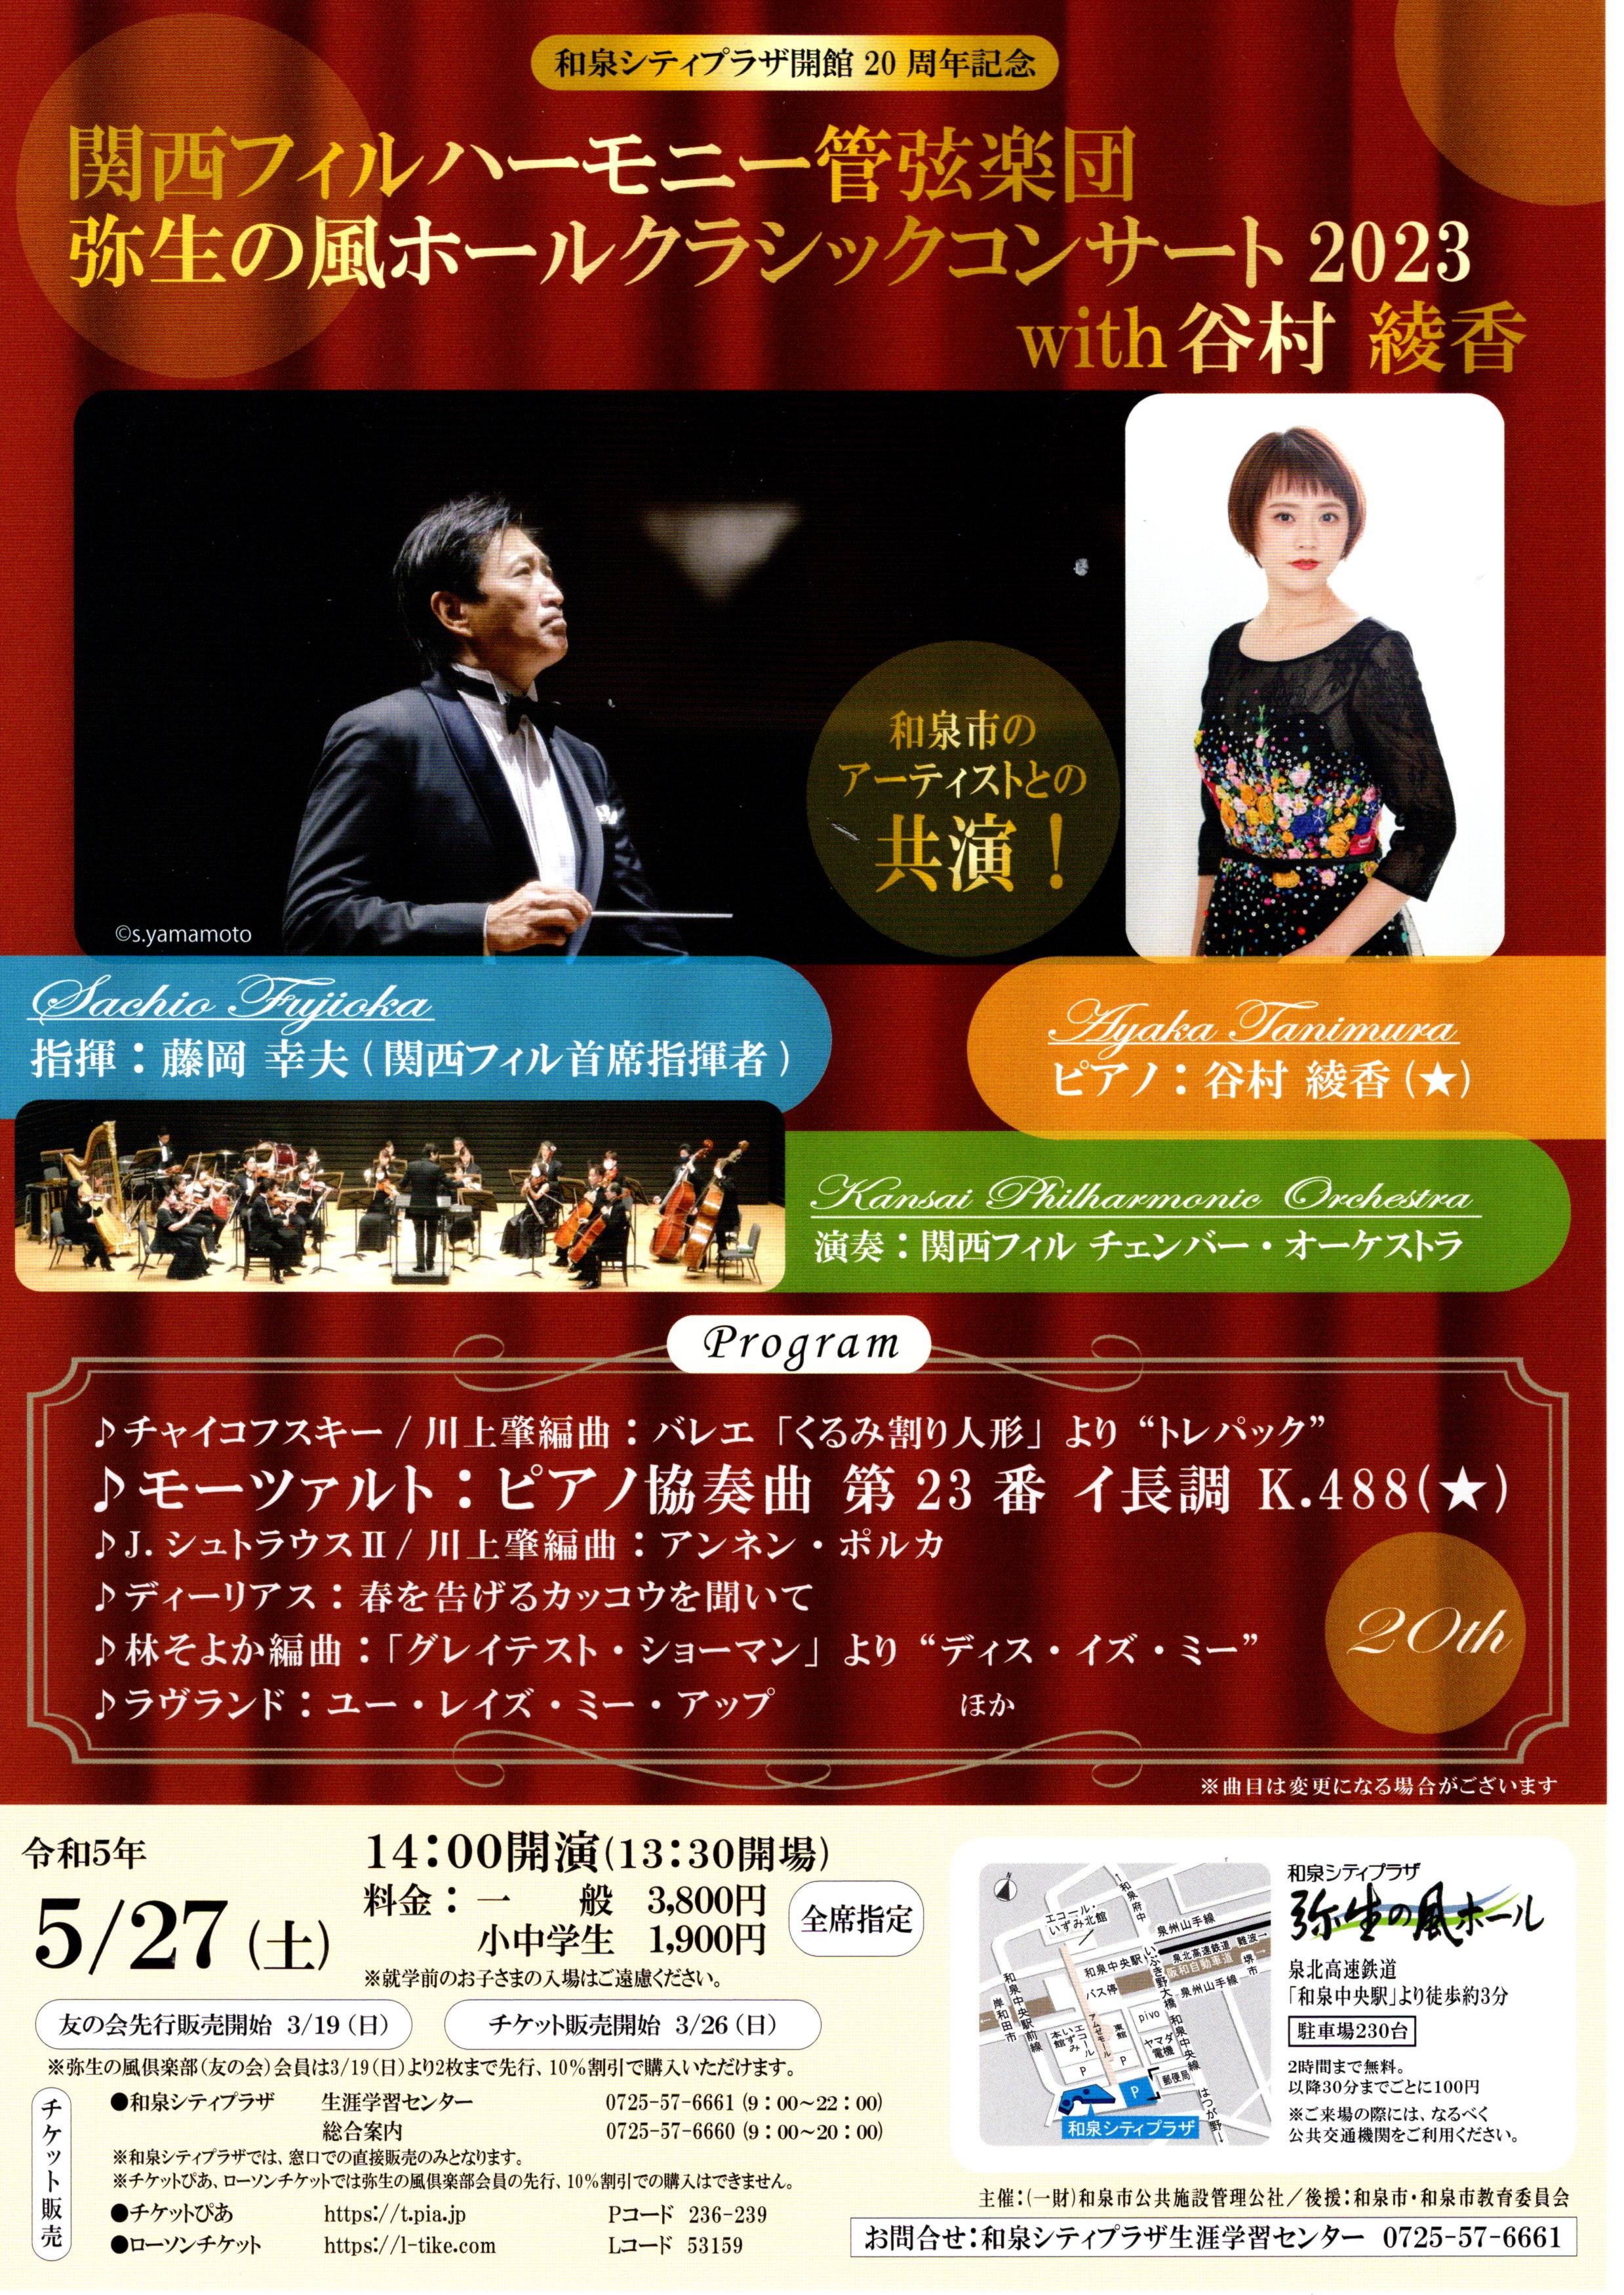 【終了】関西フィルハーモニー管弦楽団　弥生の風ホールクラシックコンサート2023 with 谷村 綾香